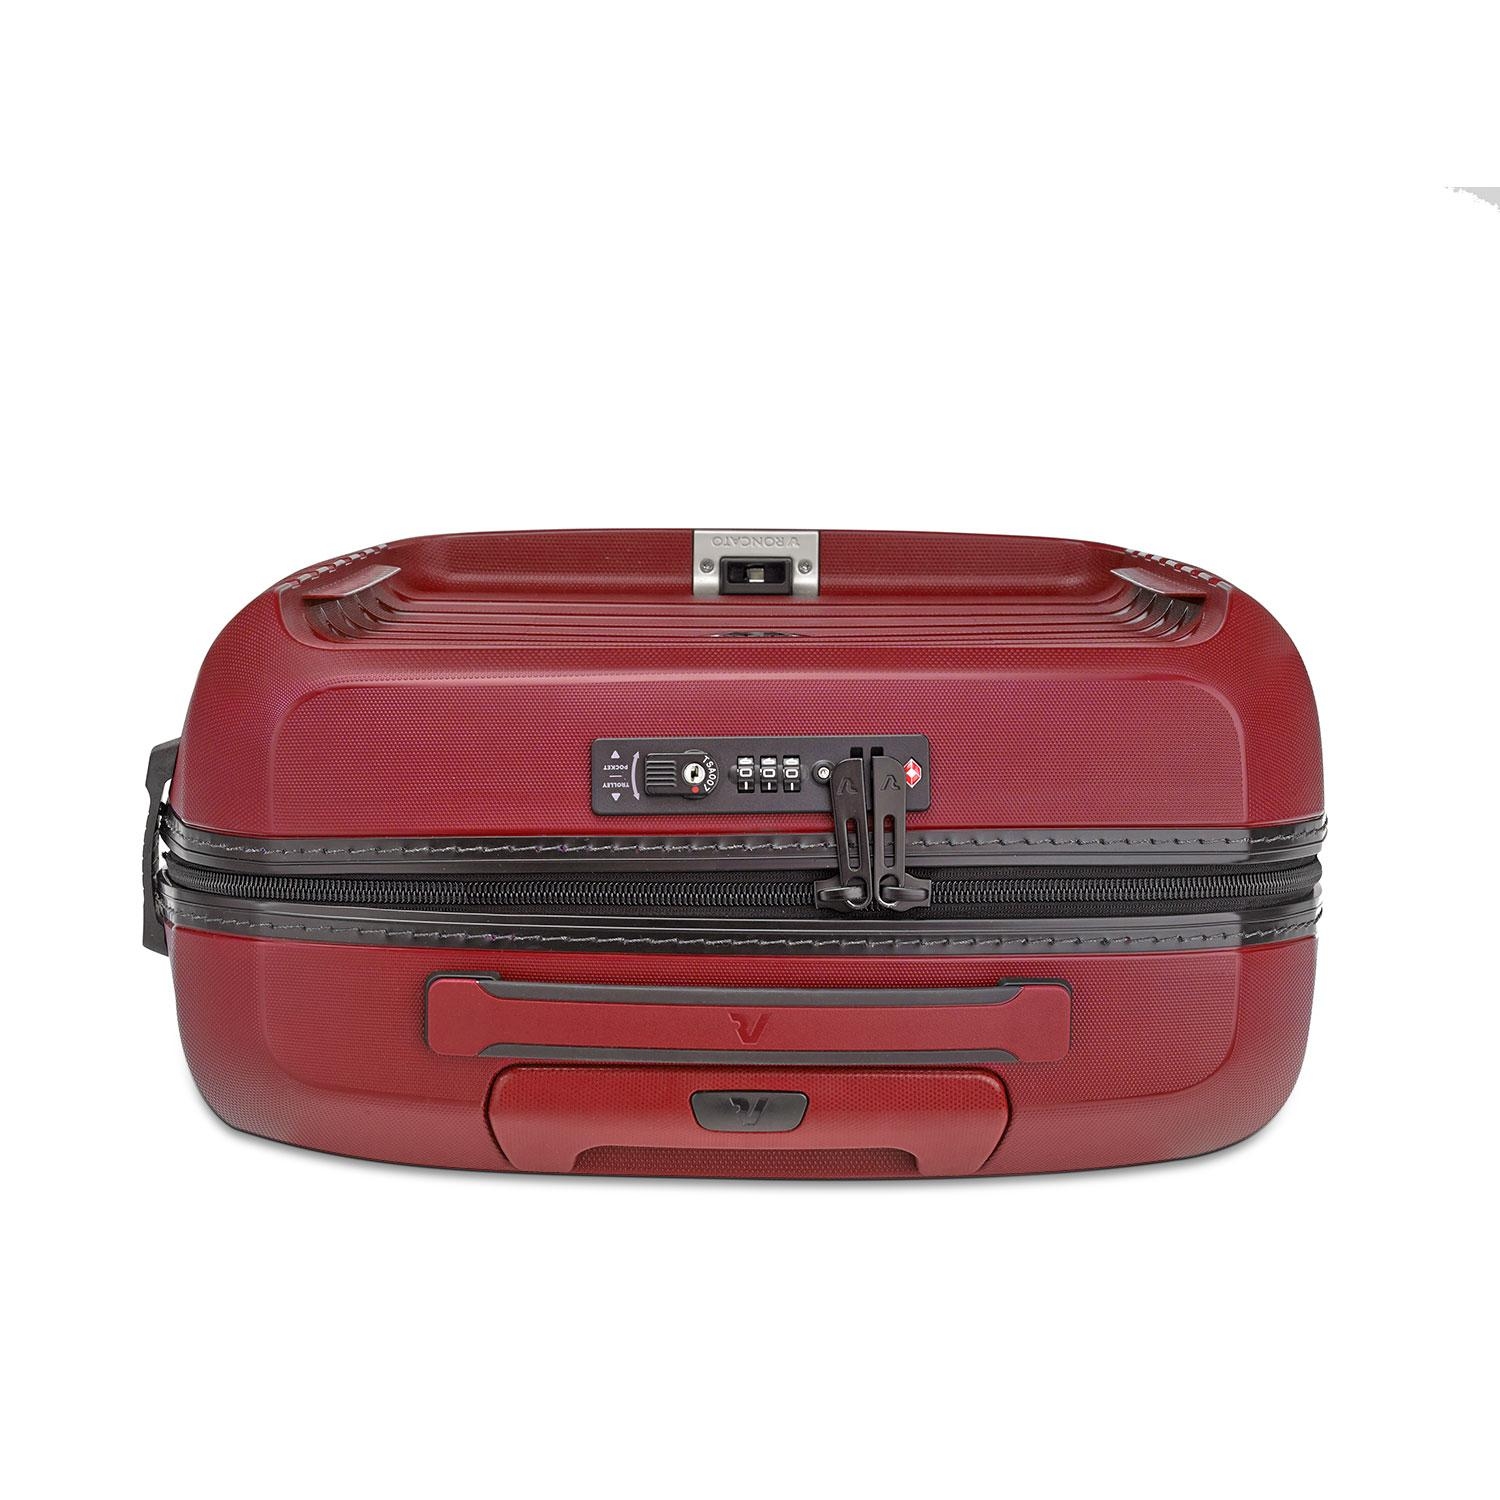 Vali Roncato D-Box size S (20 inch) - Red chống rạch hoàn toàn